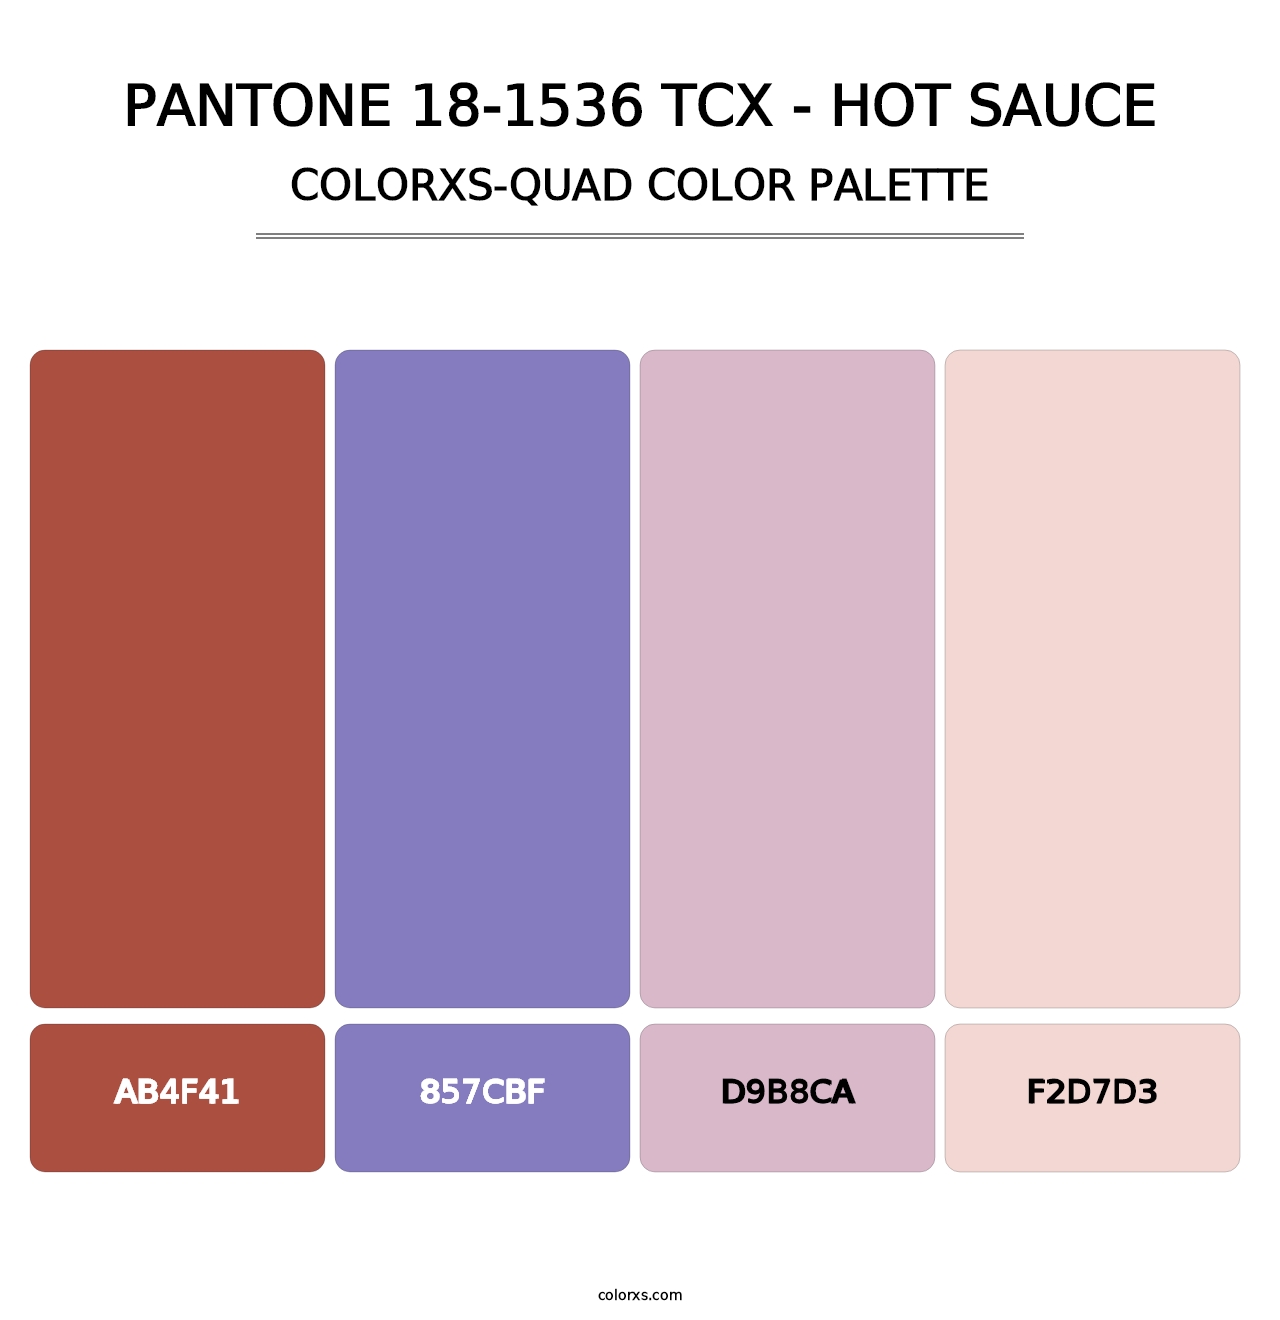 PANTONE 18-1536 TCX - Hot Sauce - Colorxs Quad Palette